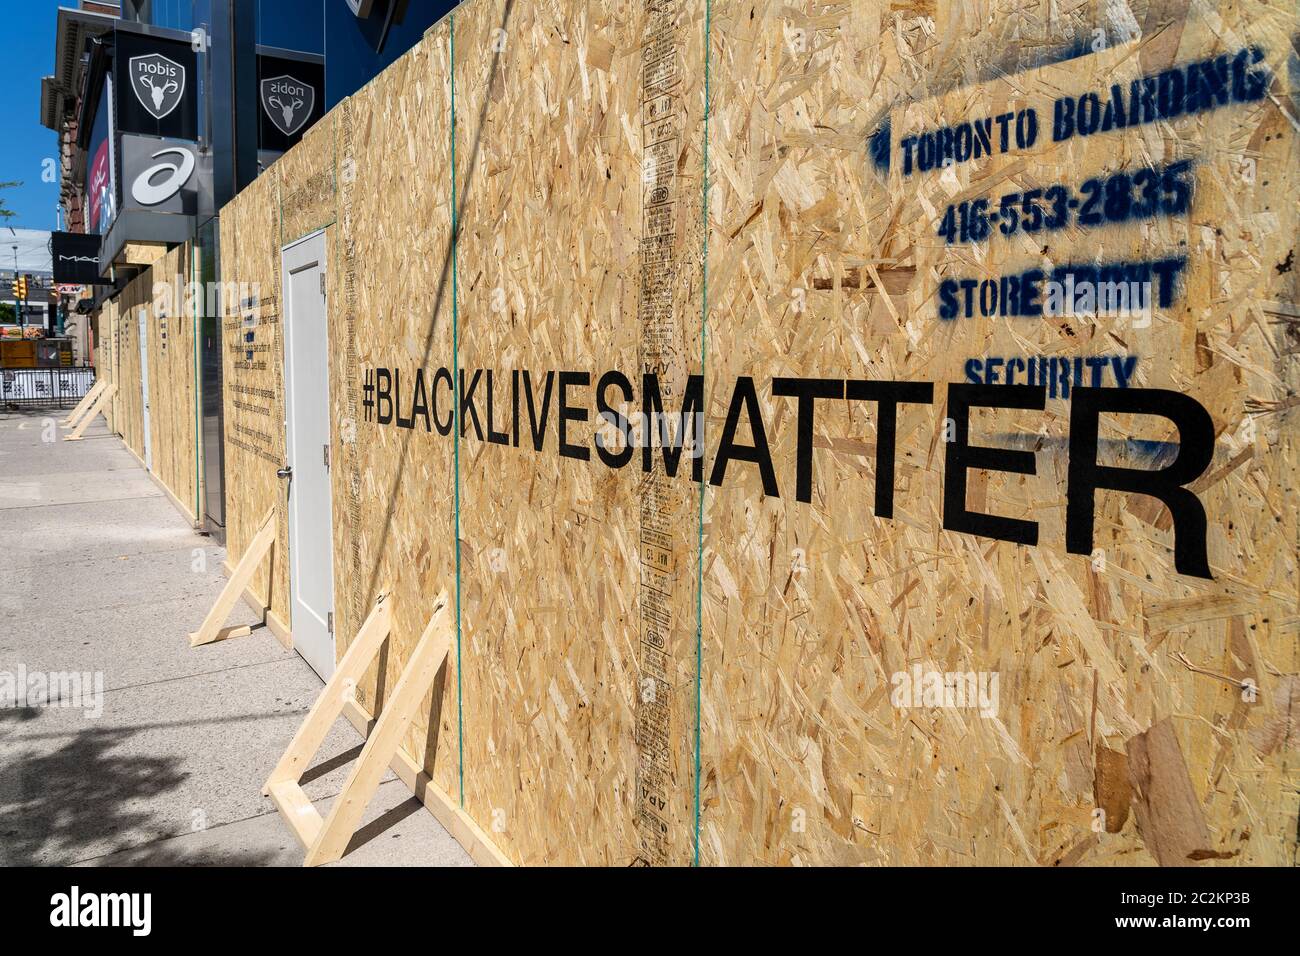 Si è imbarcato sul fronte dello storefront nel centro di Toronto mostrando Black Lives Matter messaggio scritto in avanti a sostegno del movimento sociale contro l'ingiustizia razziale. Foto Stock